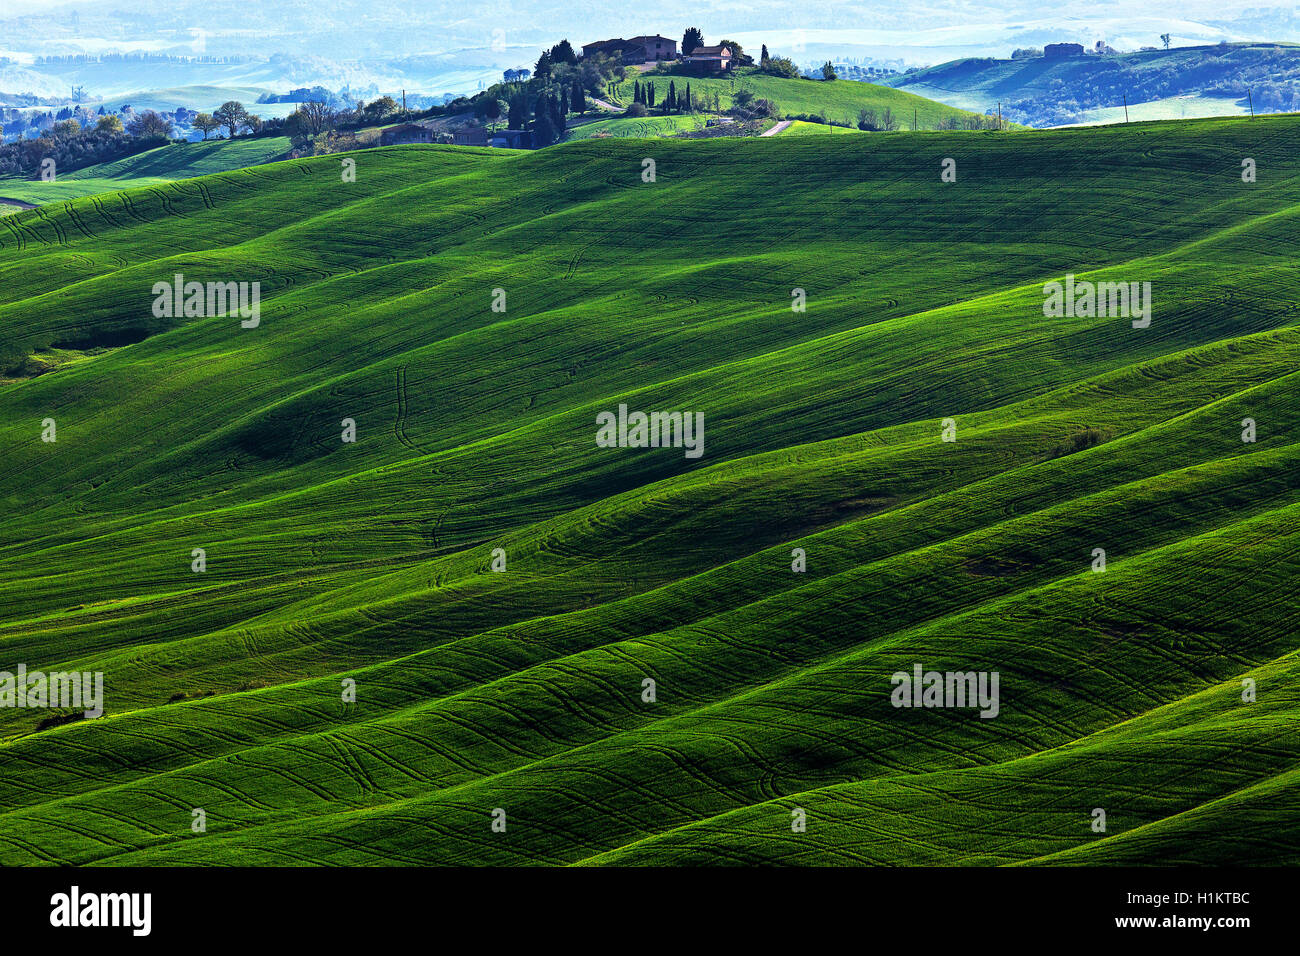 Hügelige Landschaft, Getreidefelder und Bauernhaus, Asciano, Crete Senesi, Provinz Siena, Toskana, Italien Stockfoto